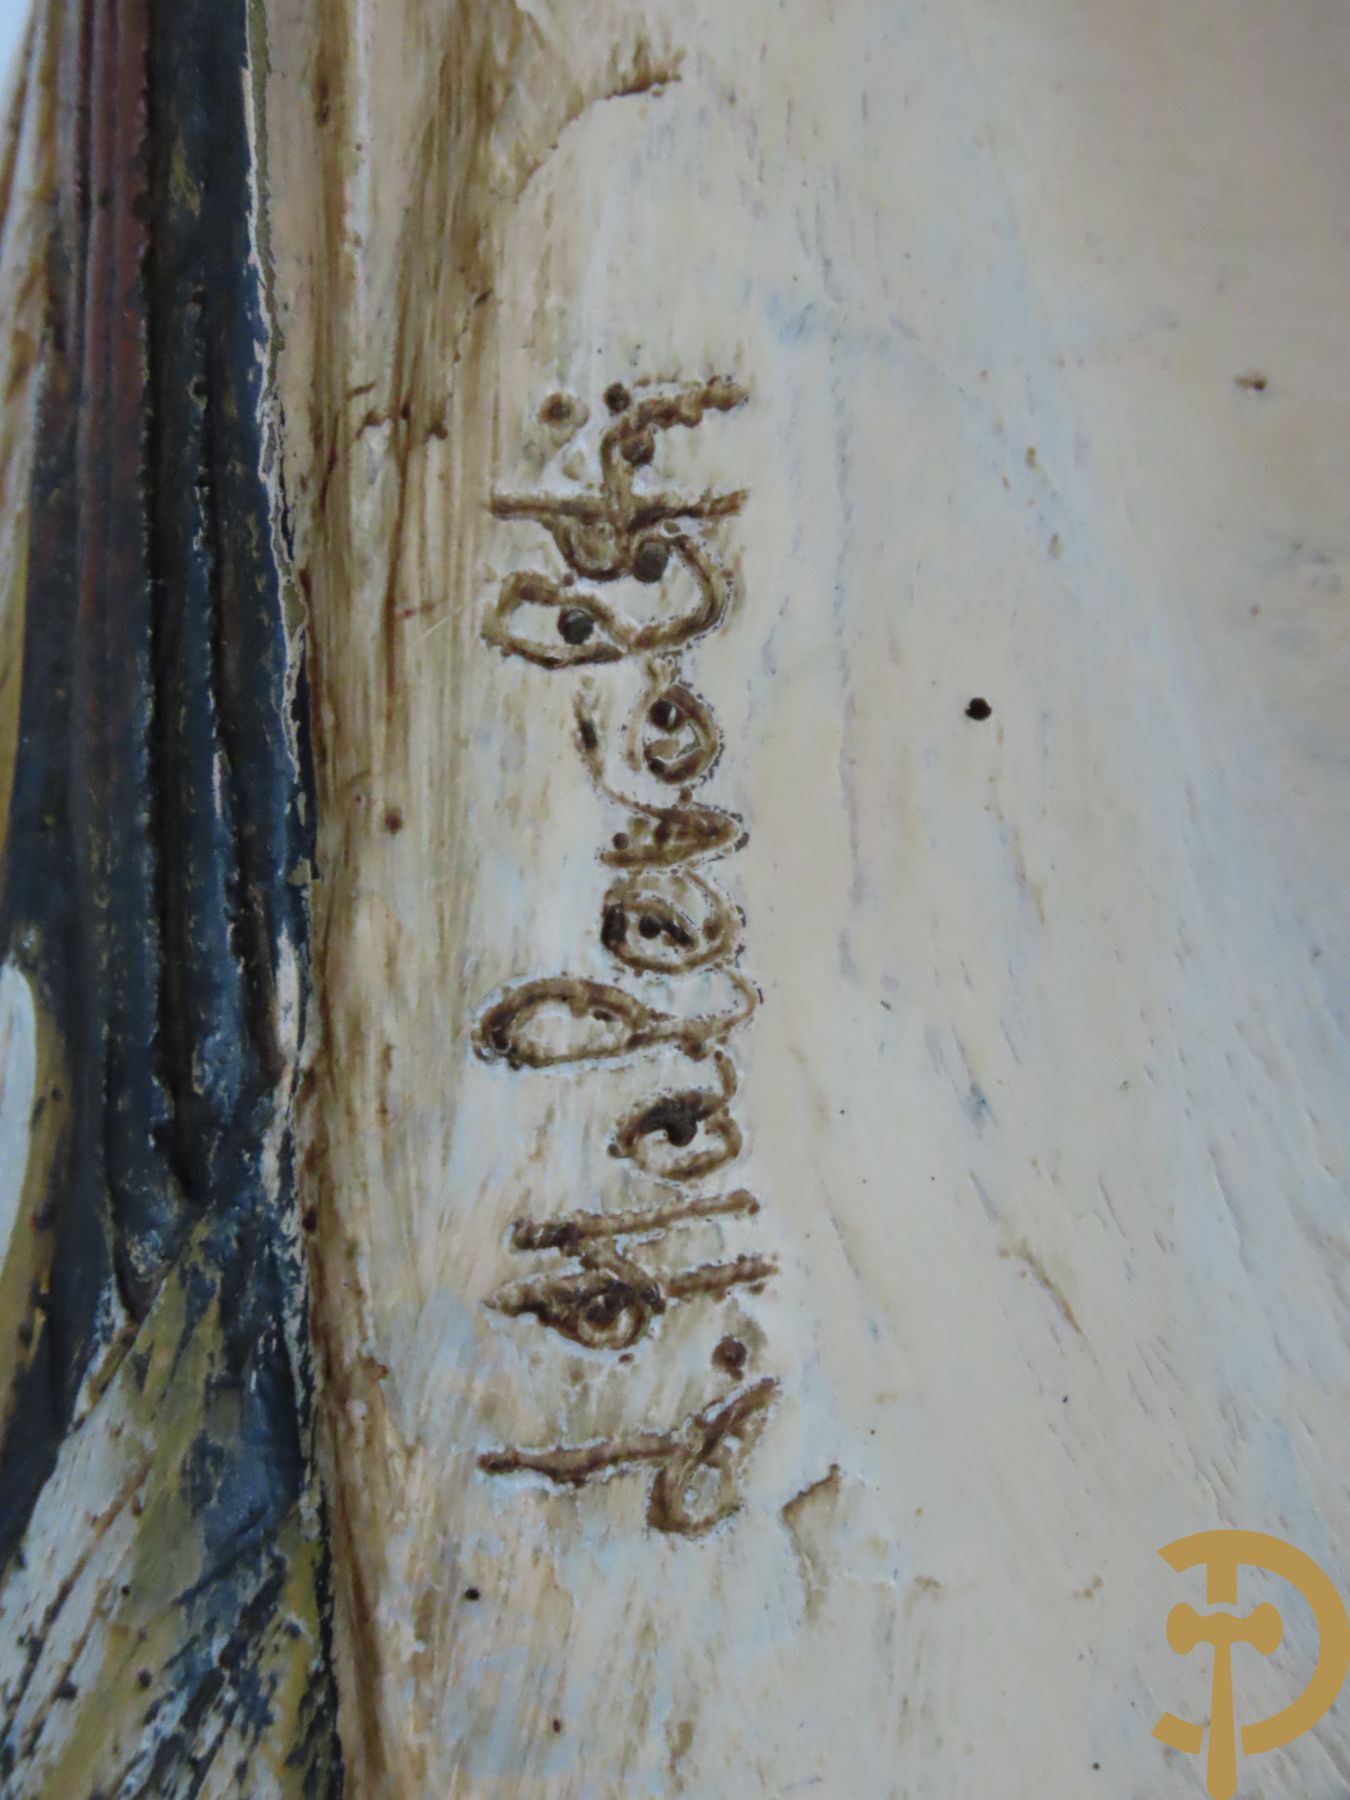 Kunstzinnige wulp met koperen snavel en beschilderd komposiet lijf, Malevolti Elli gemerkt